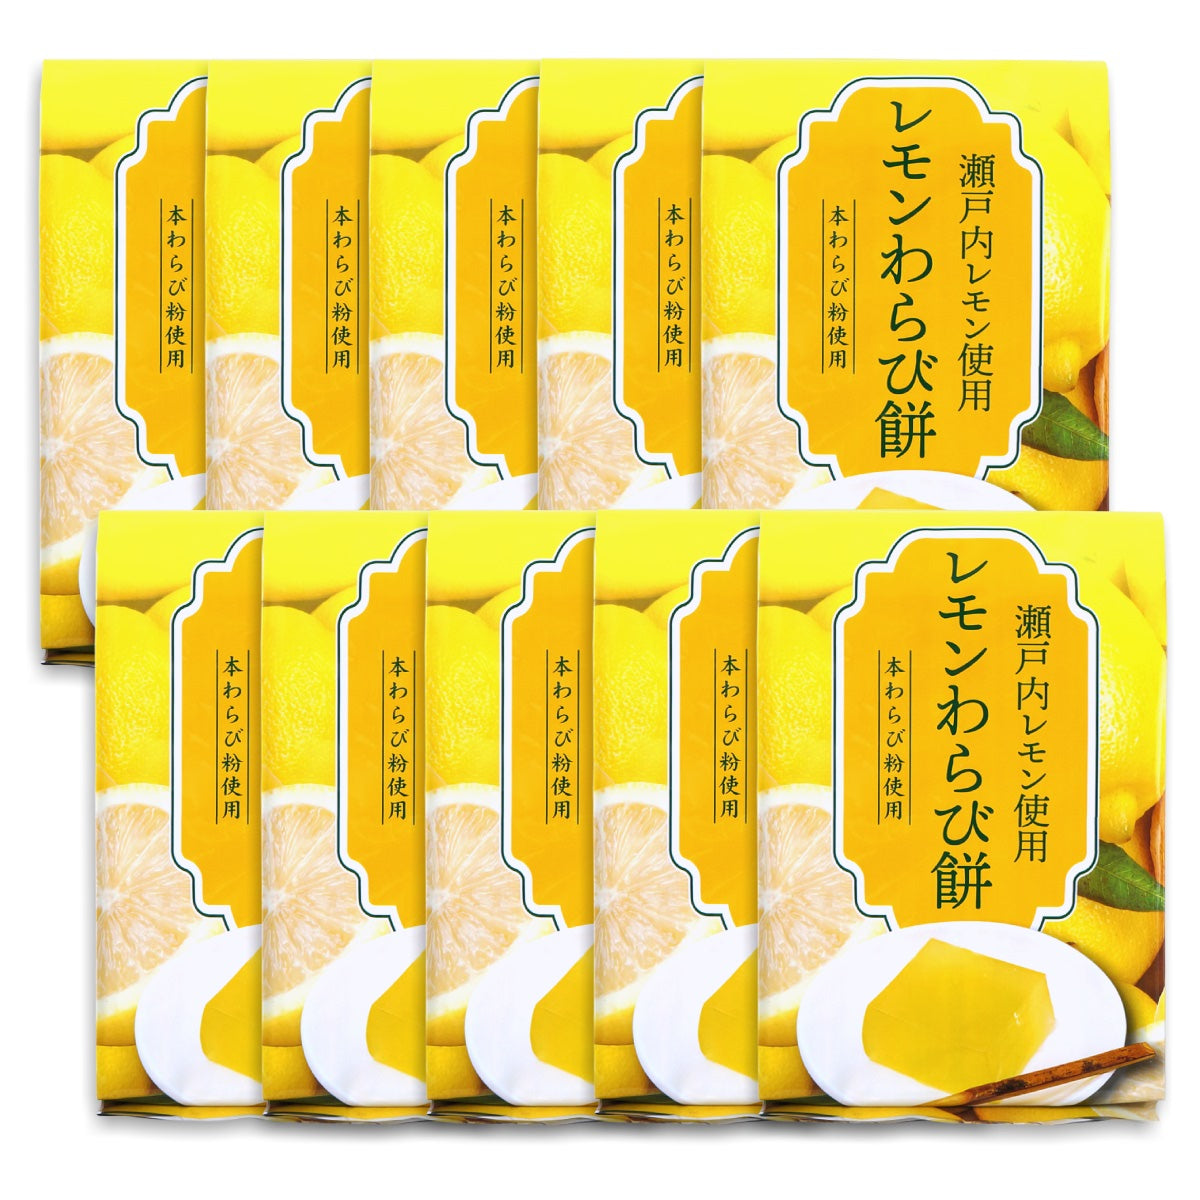 レモンわらび餅 瀬戸内レモン 本わらび粉使用 225g×10袋 ギフトボックス入り 送料無料